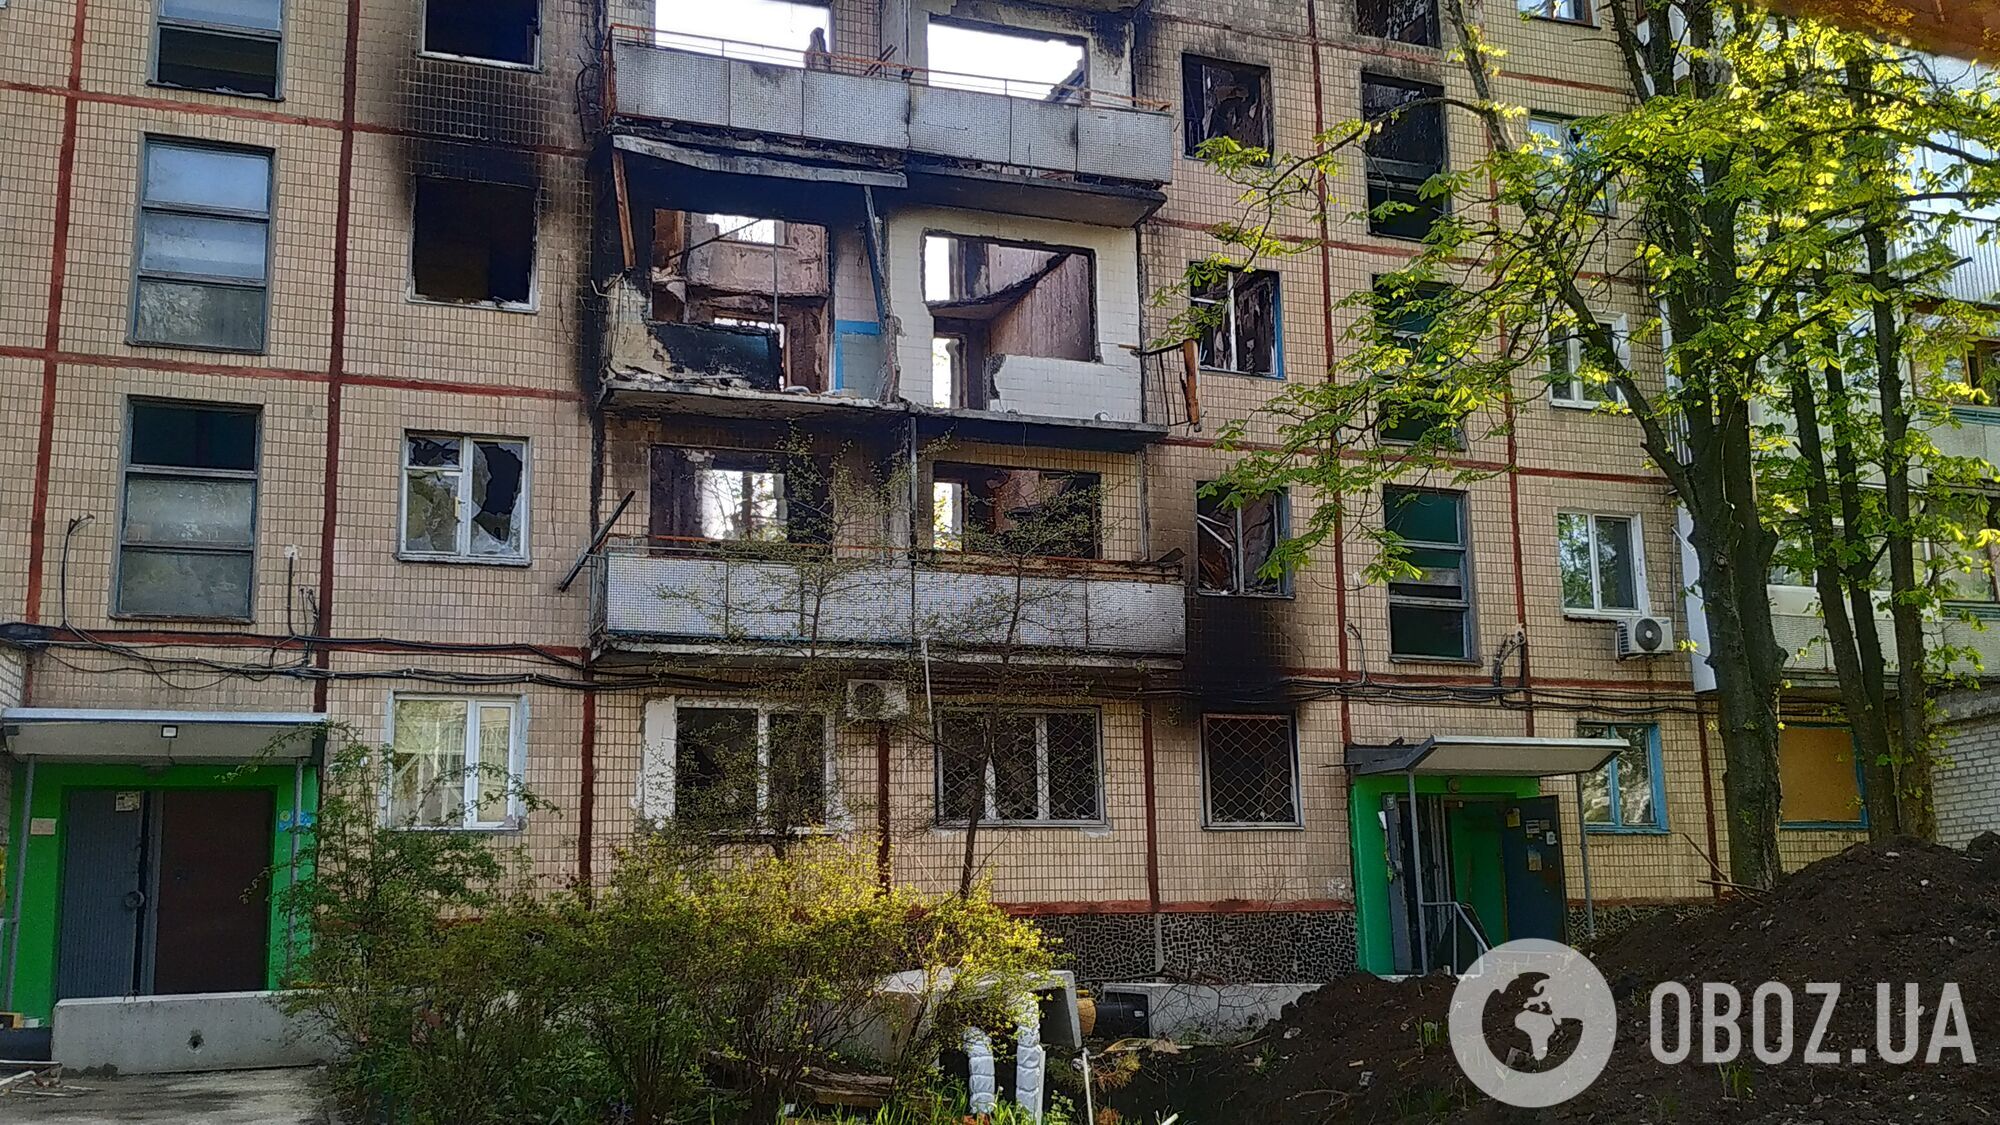 Разрушенный дом на Салтовке в Харькове